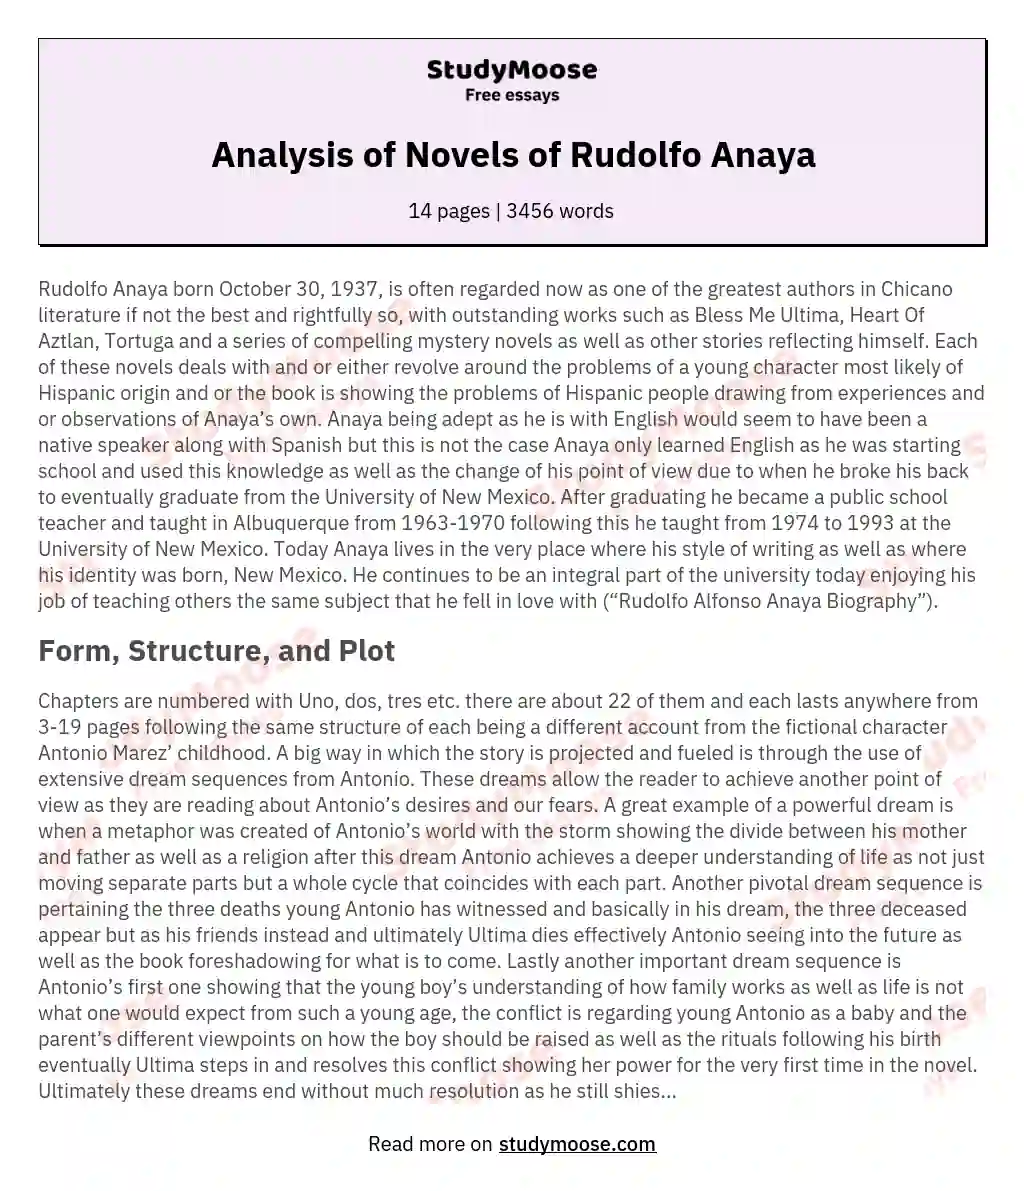 Analysis of Novels of Rudolfo Anaya essay